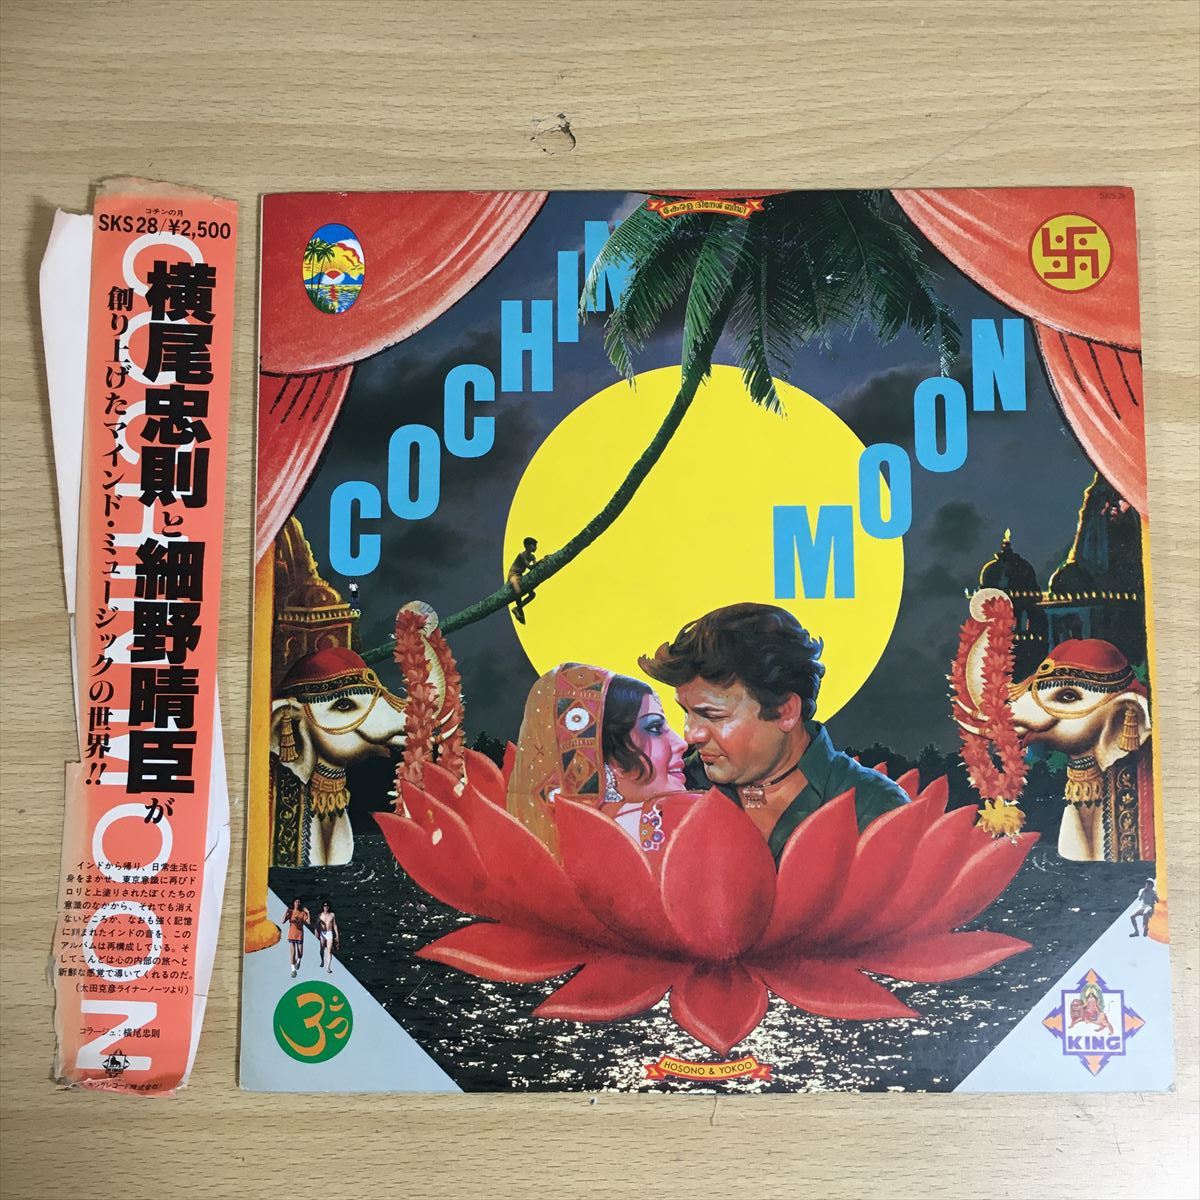 横尾忠則 細野晴臣 「Cochin Moon」 「コチンの月」 King Records SKS-28 12インチ LP LP盤 レコード レコード盤 アナログ盤 1 カ 6655_画像1